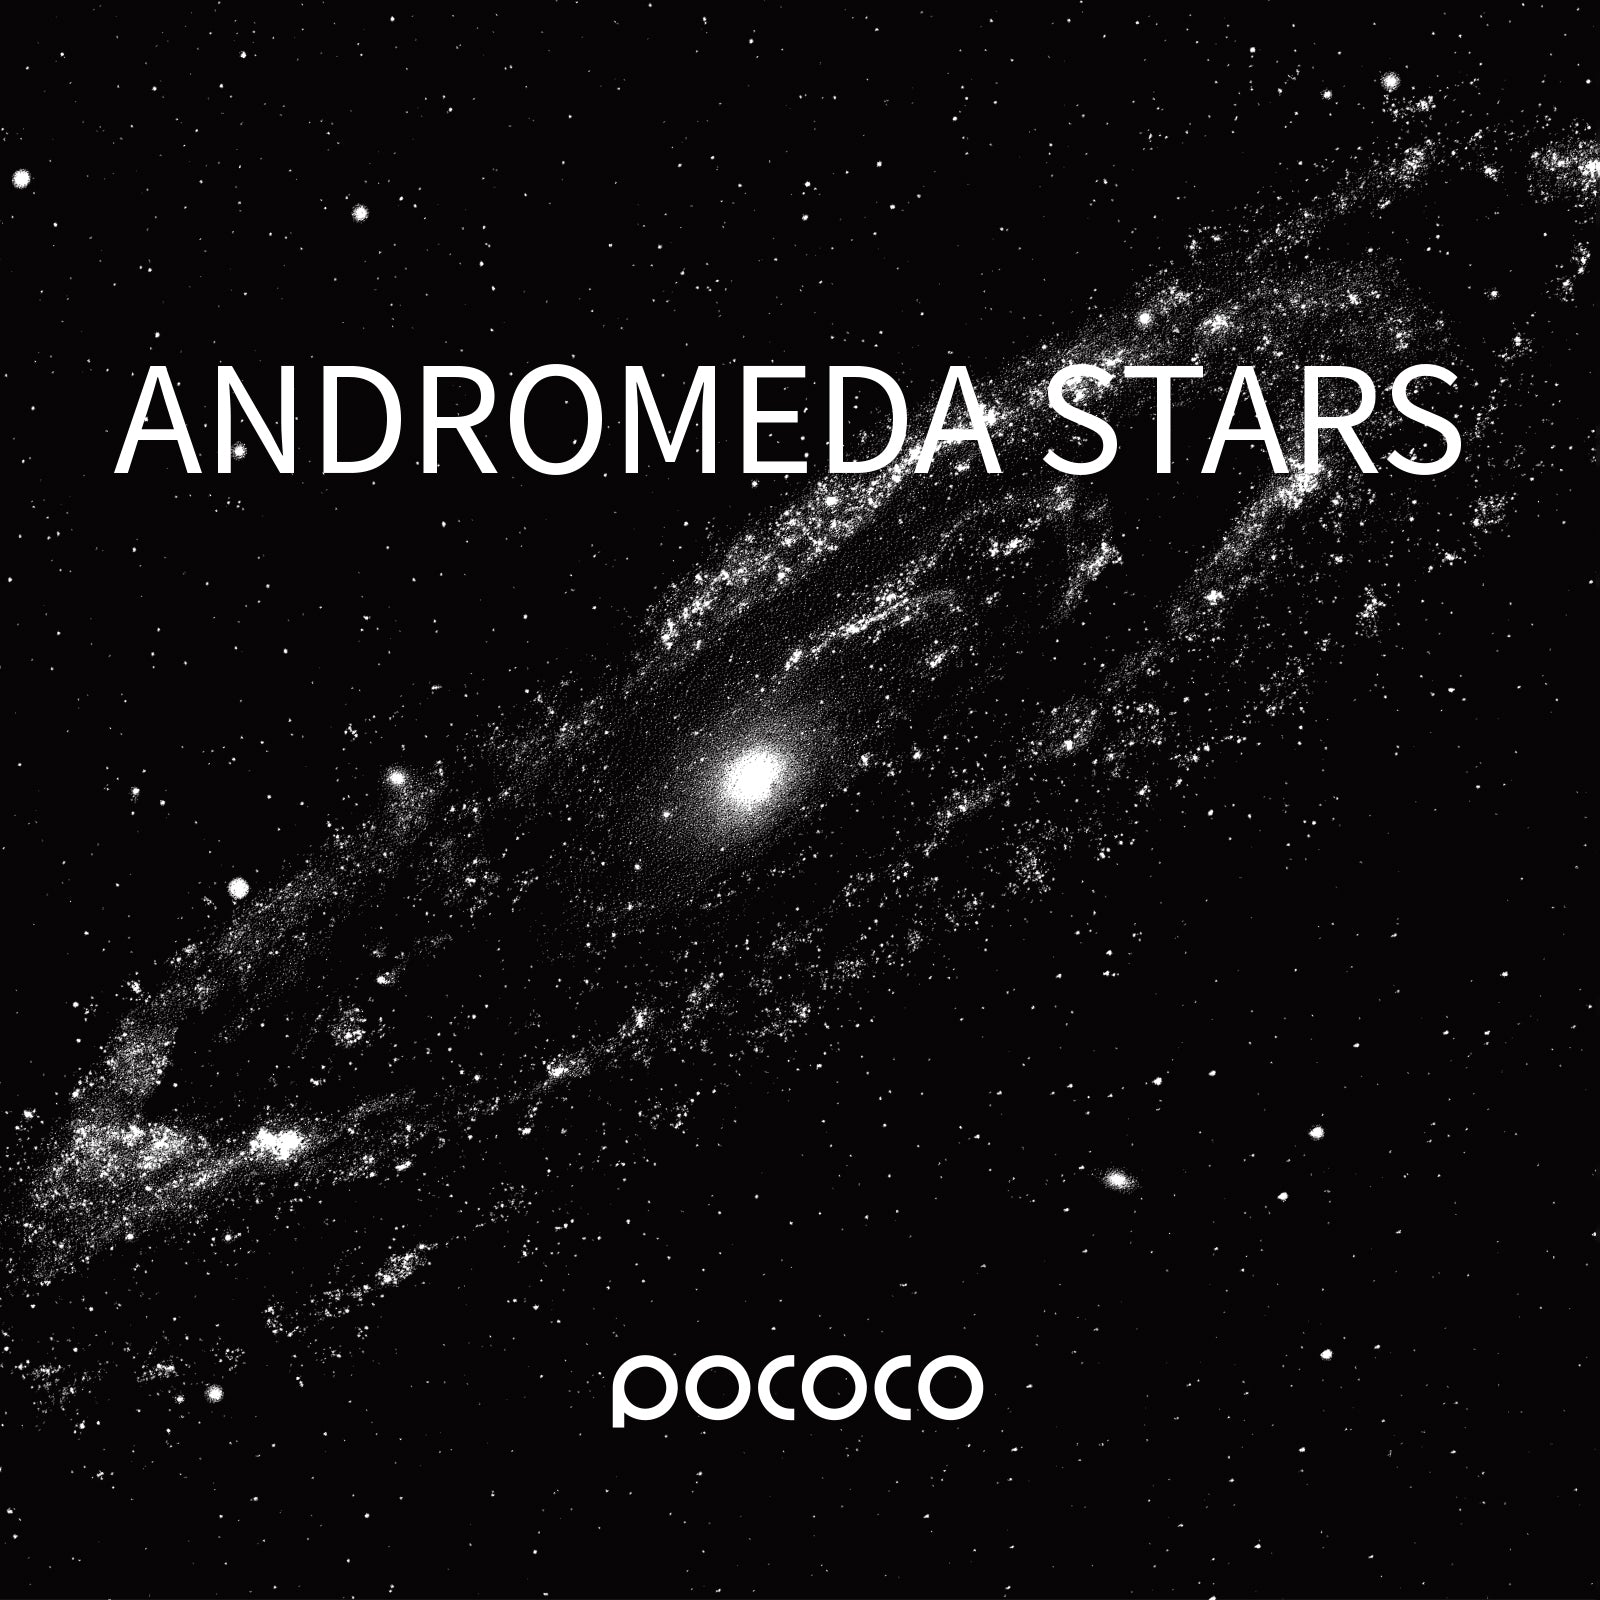 Free Choice of POCOCO Galaxy Projector | 1 Piece